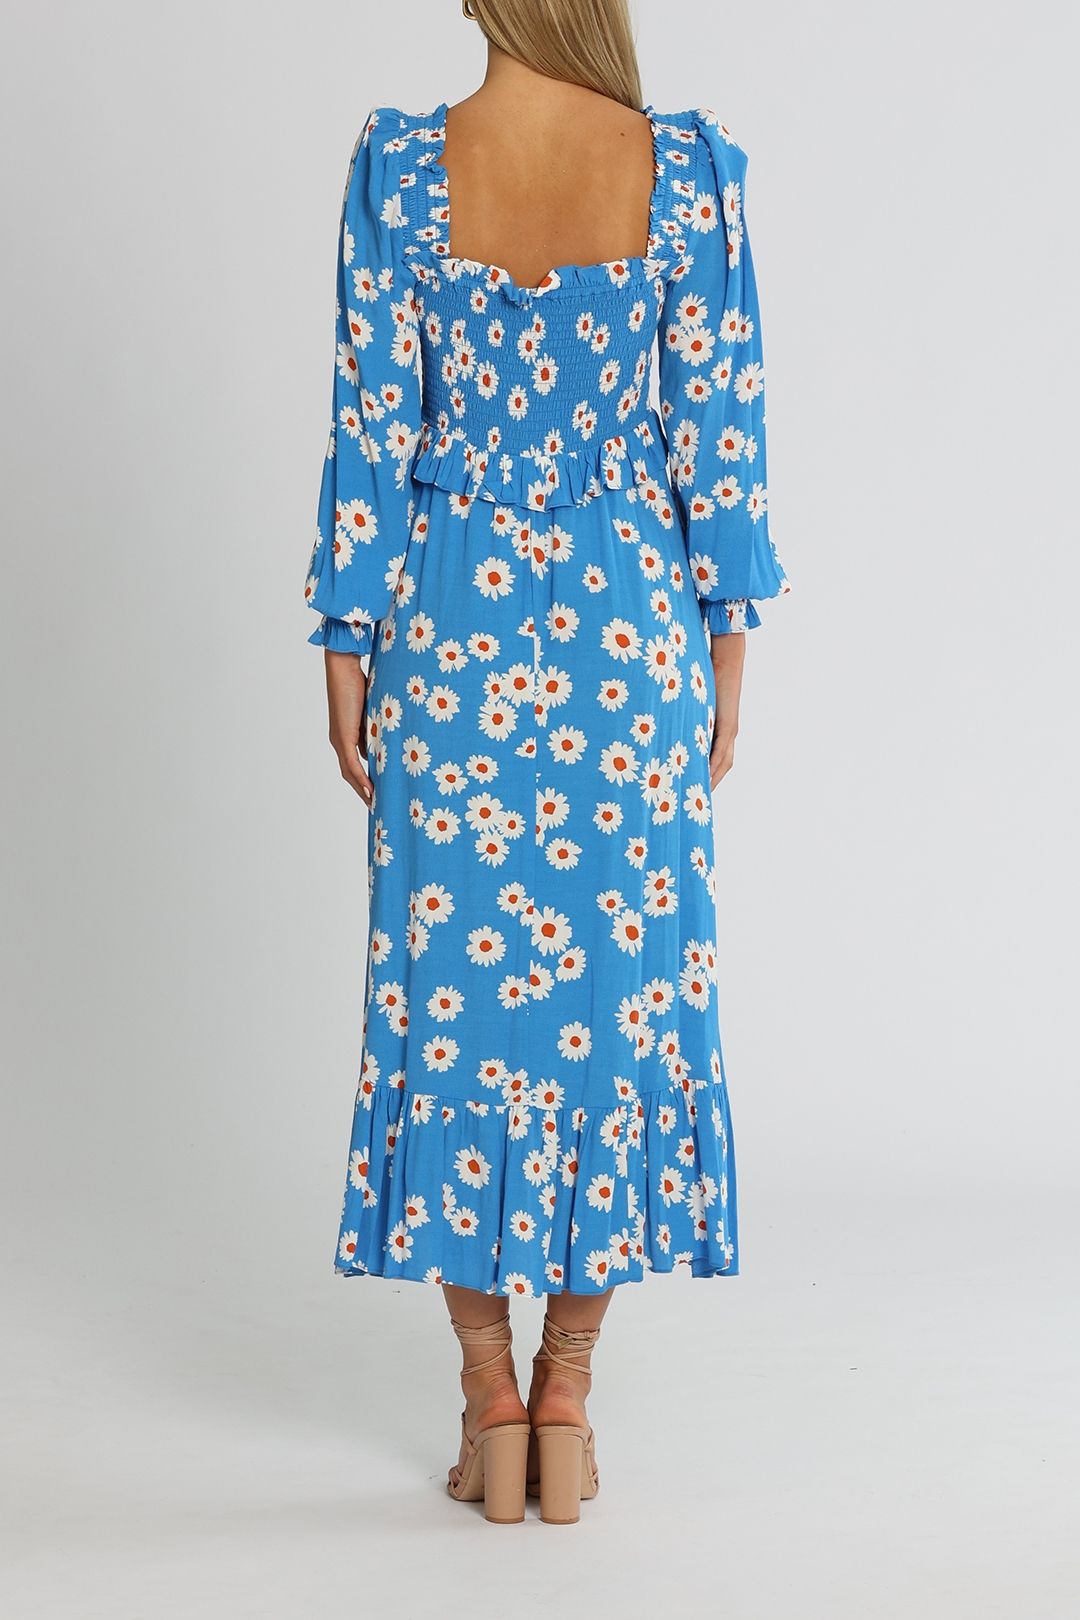 KITRI Lauren Smocked Dress Blue Daisy Midi